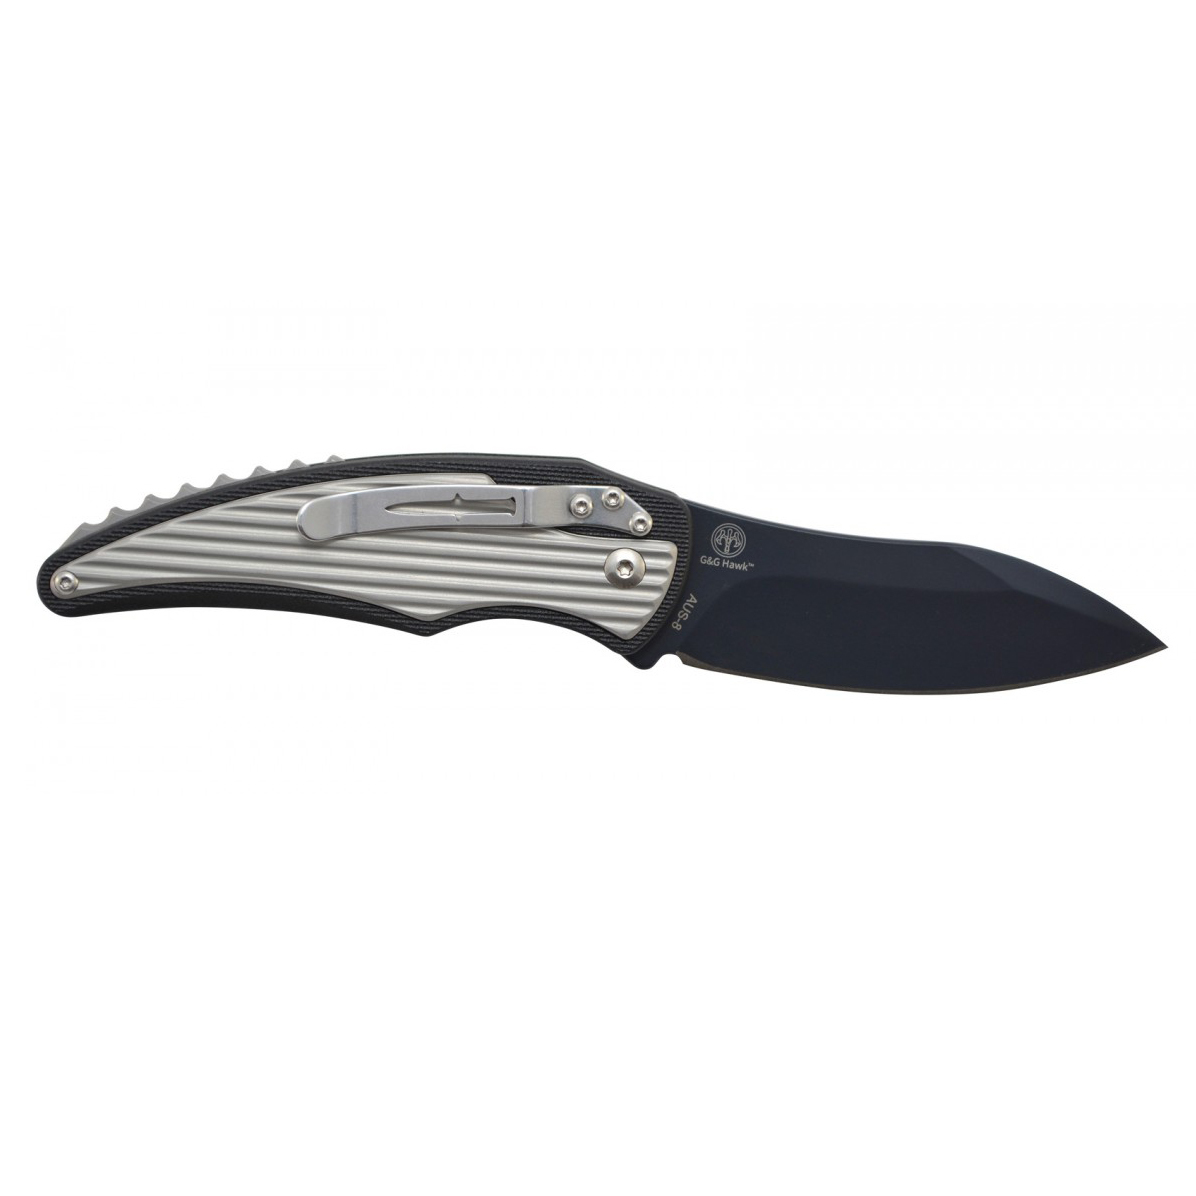 Складной нож Camillus Wildfire, сталь AUS-8, рукоять алюминий, термопластик GFN от Ножиков